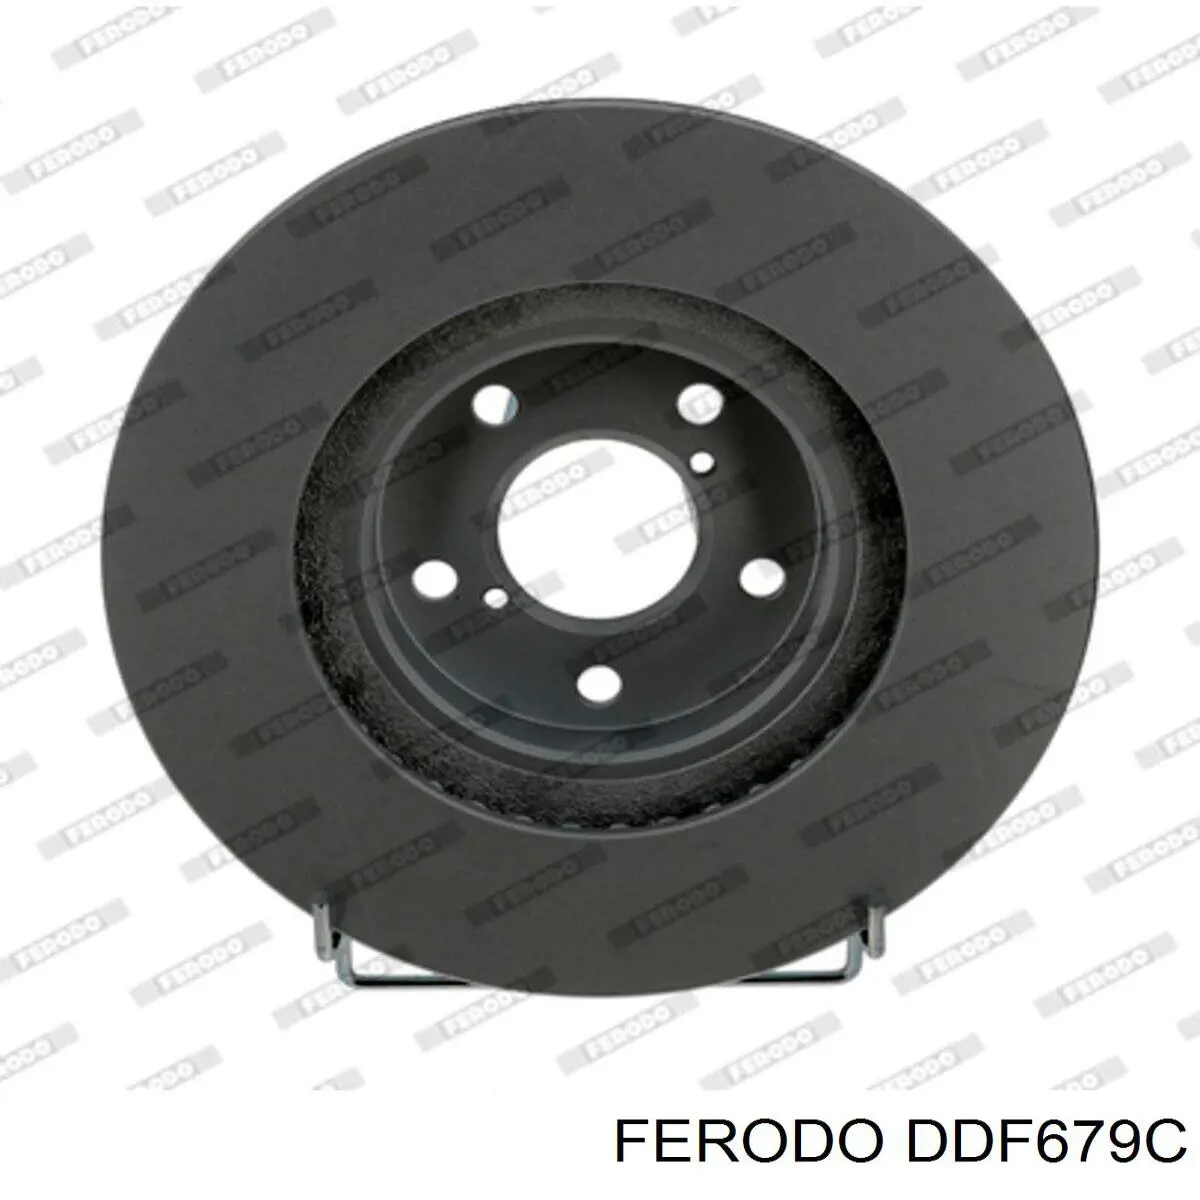 DDF679C Ferodo disco de freno delantero